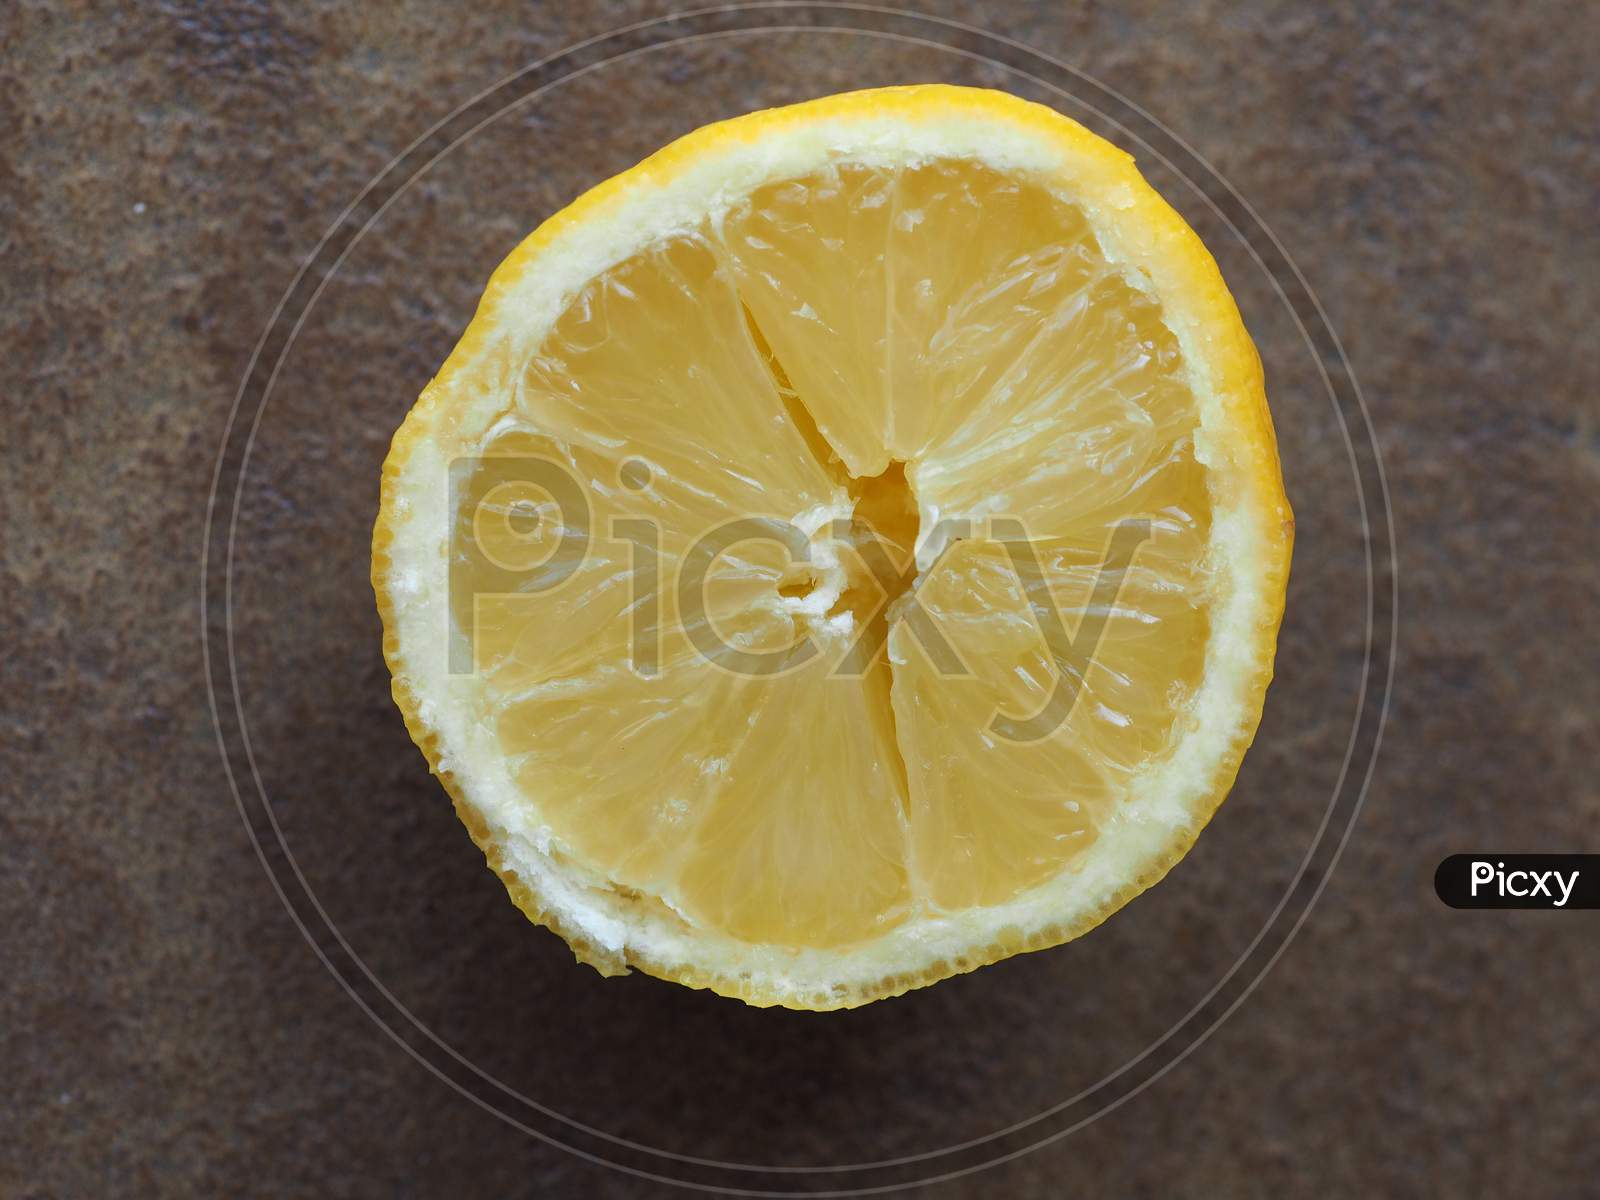 Lemon Fruit Slice